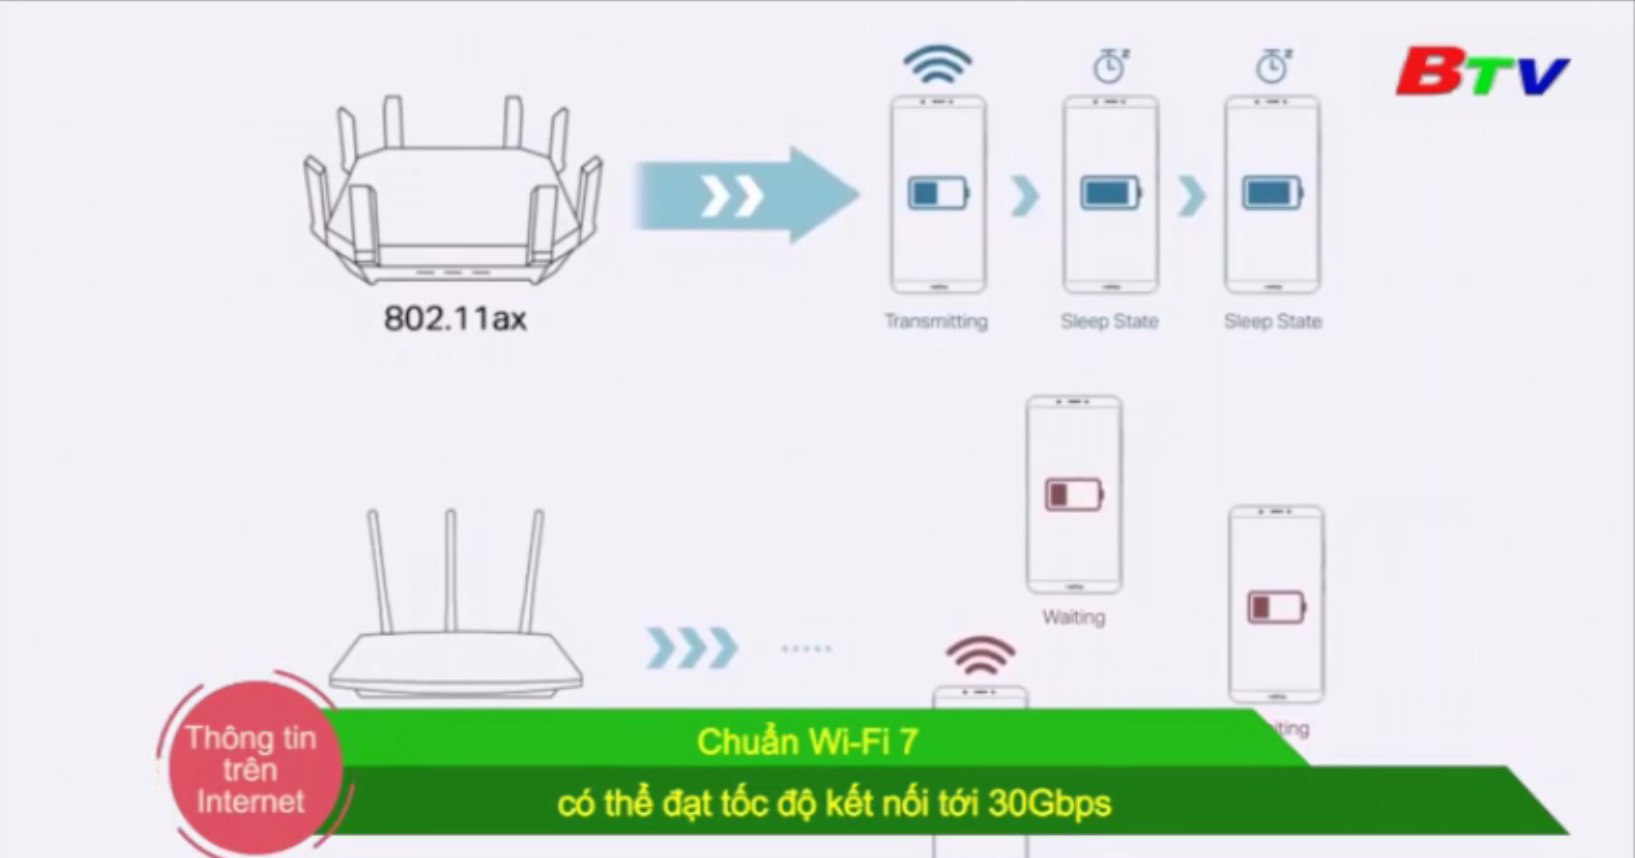 Chuẩn Wifi 7 có thể đạt tốc độ kết nối tới 30Gbps